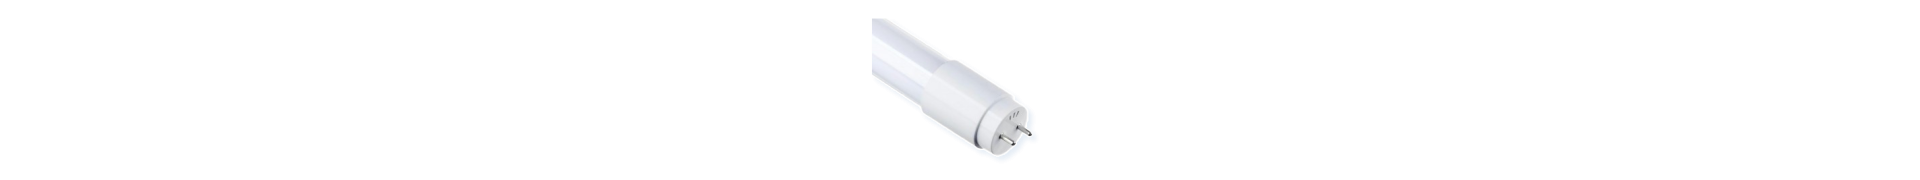 Acheter Tubes LED | Fluorescents LED | LED Atomant